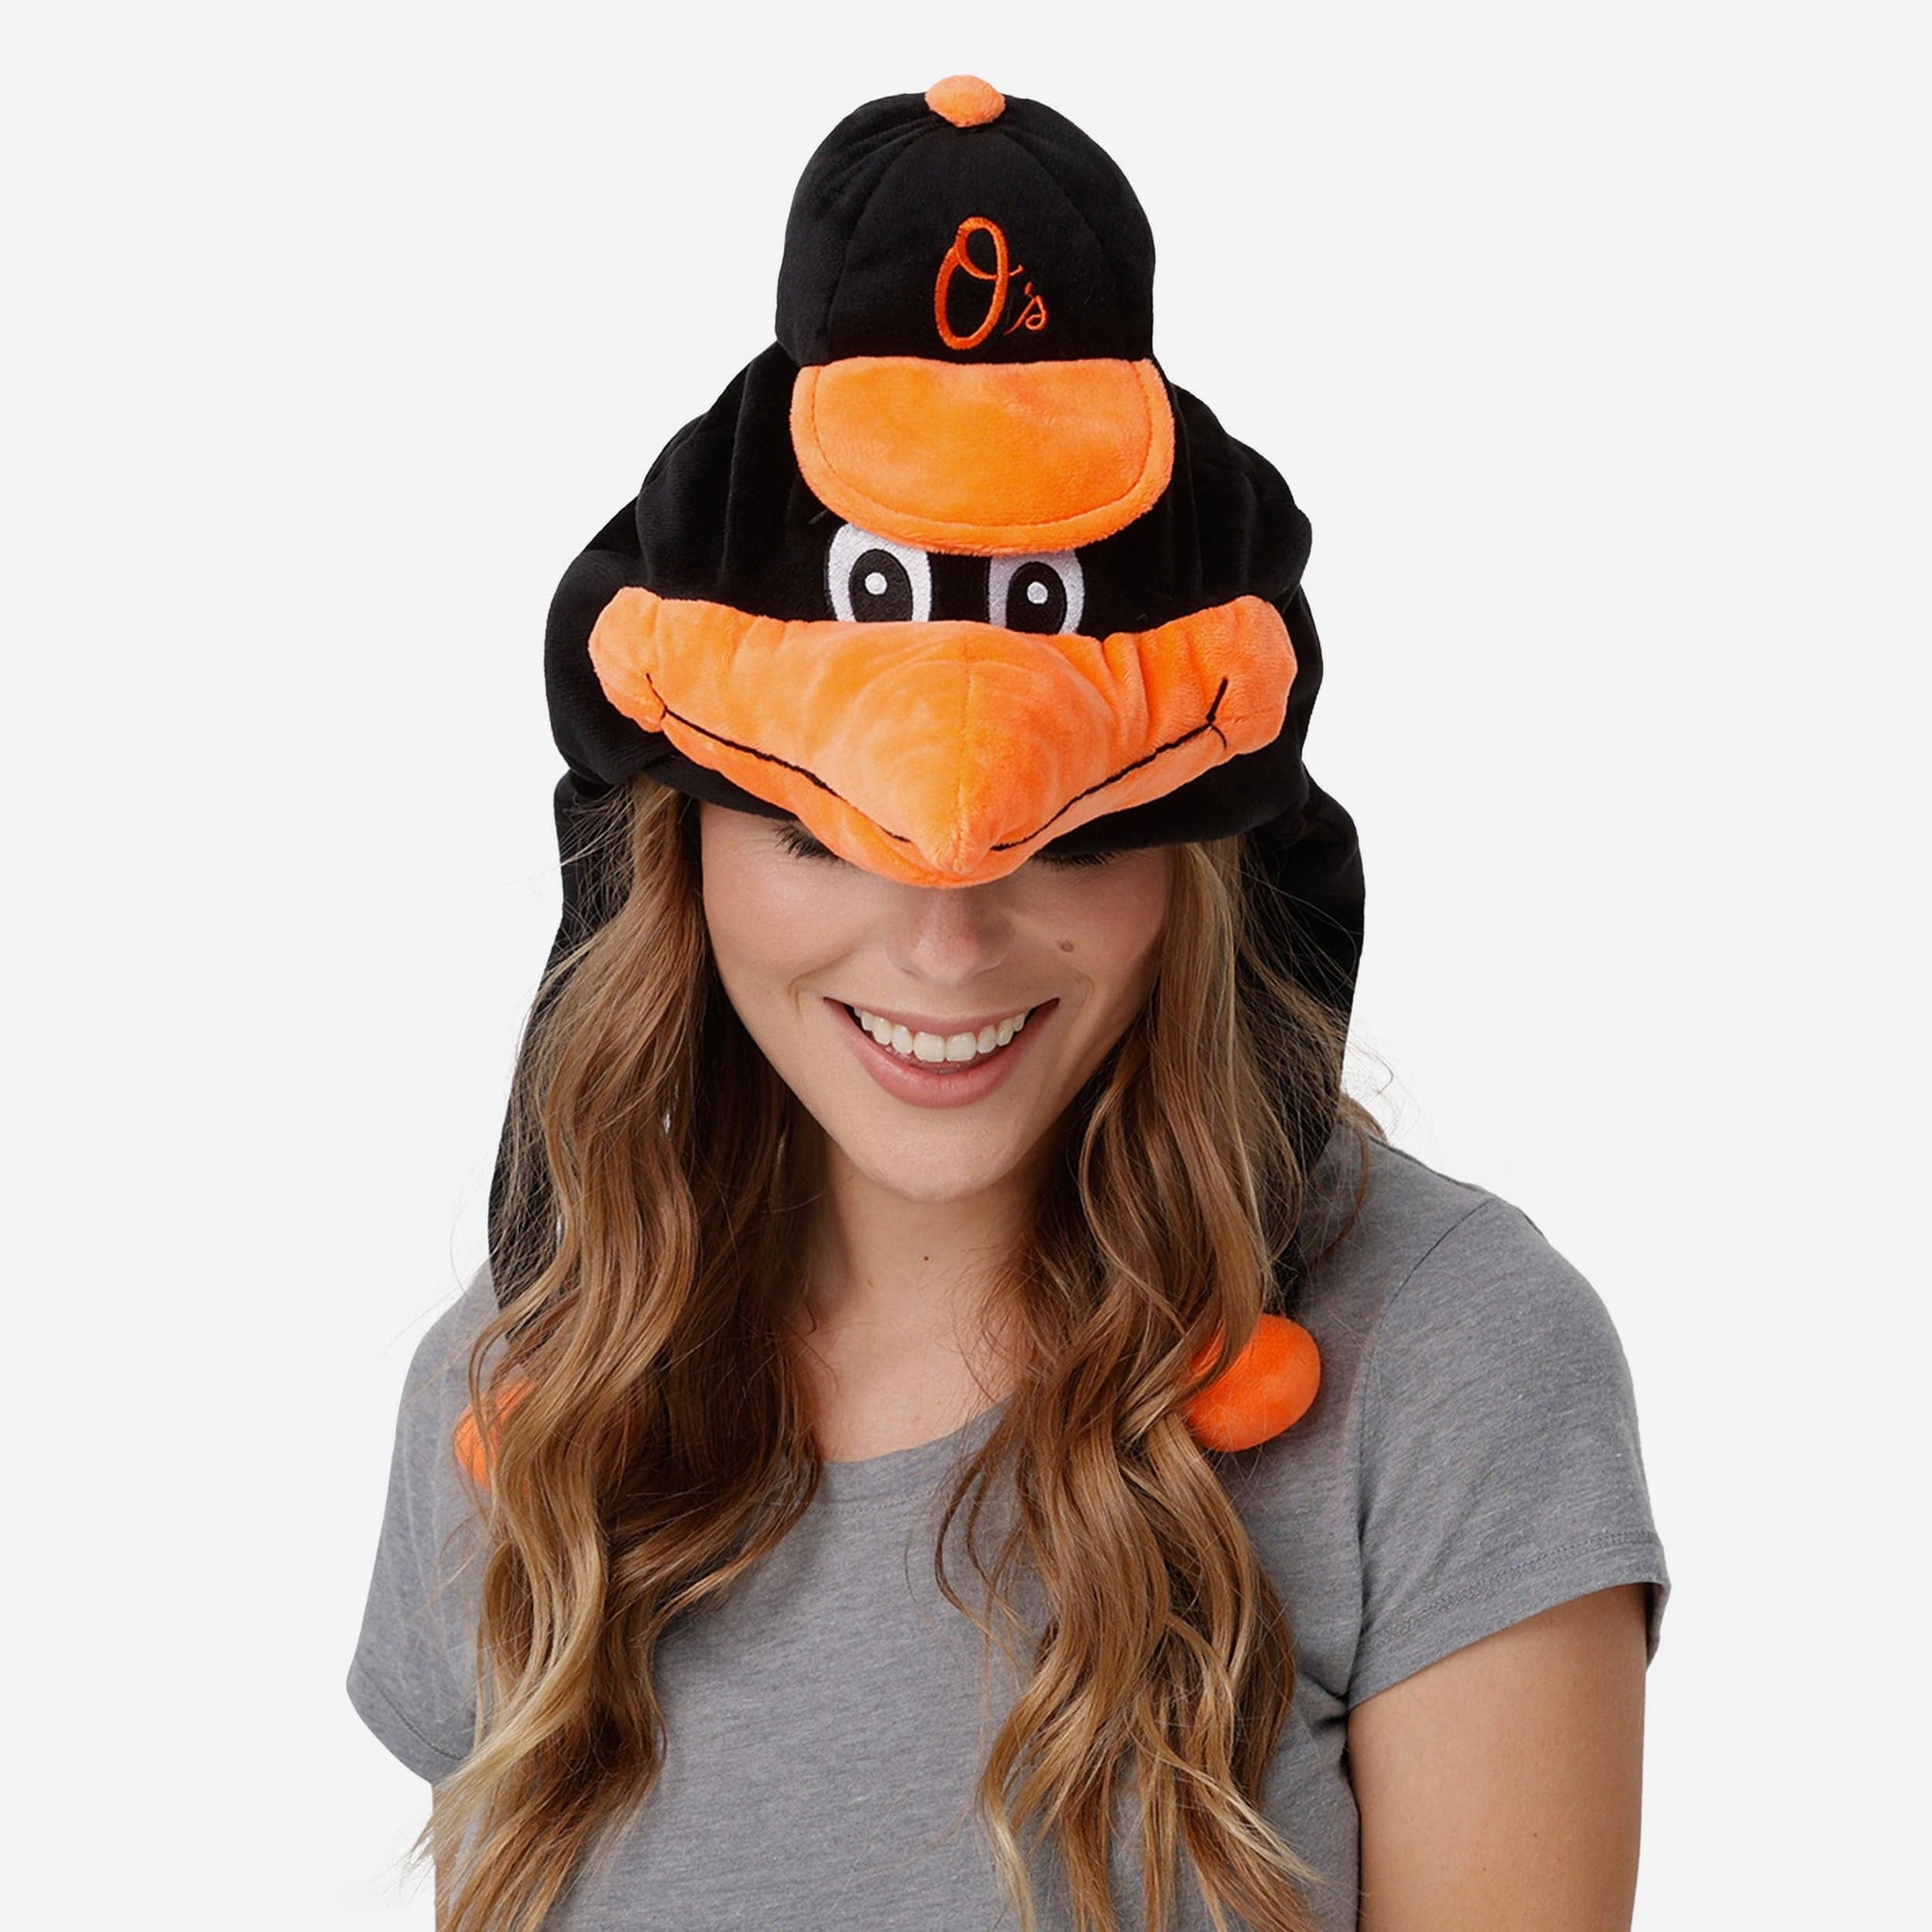 The Oriole Bird Baltimore Orioles Mascot Plush Hat FOCO